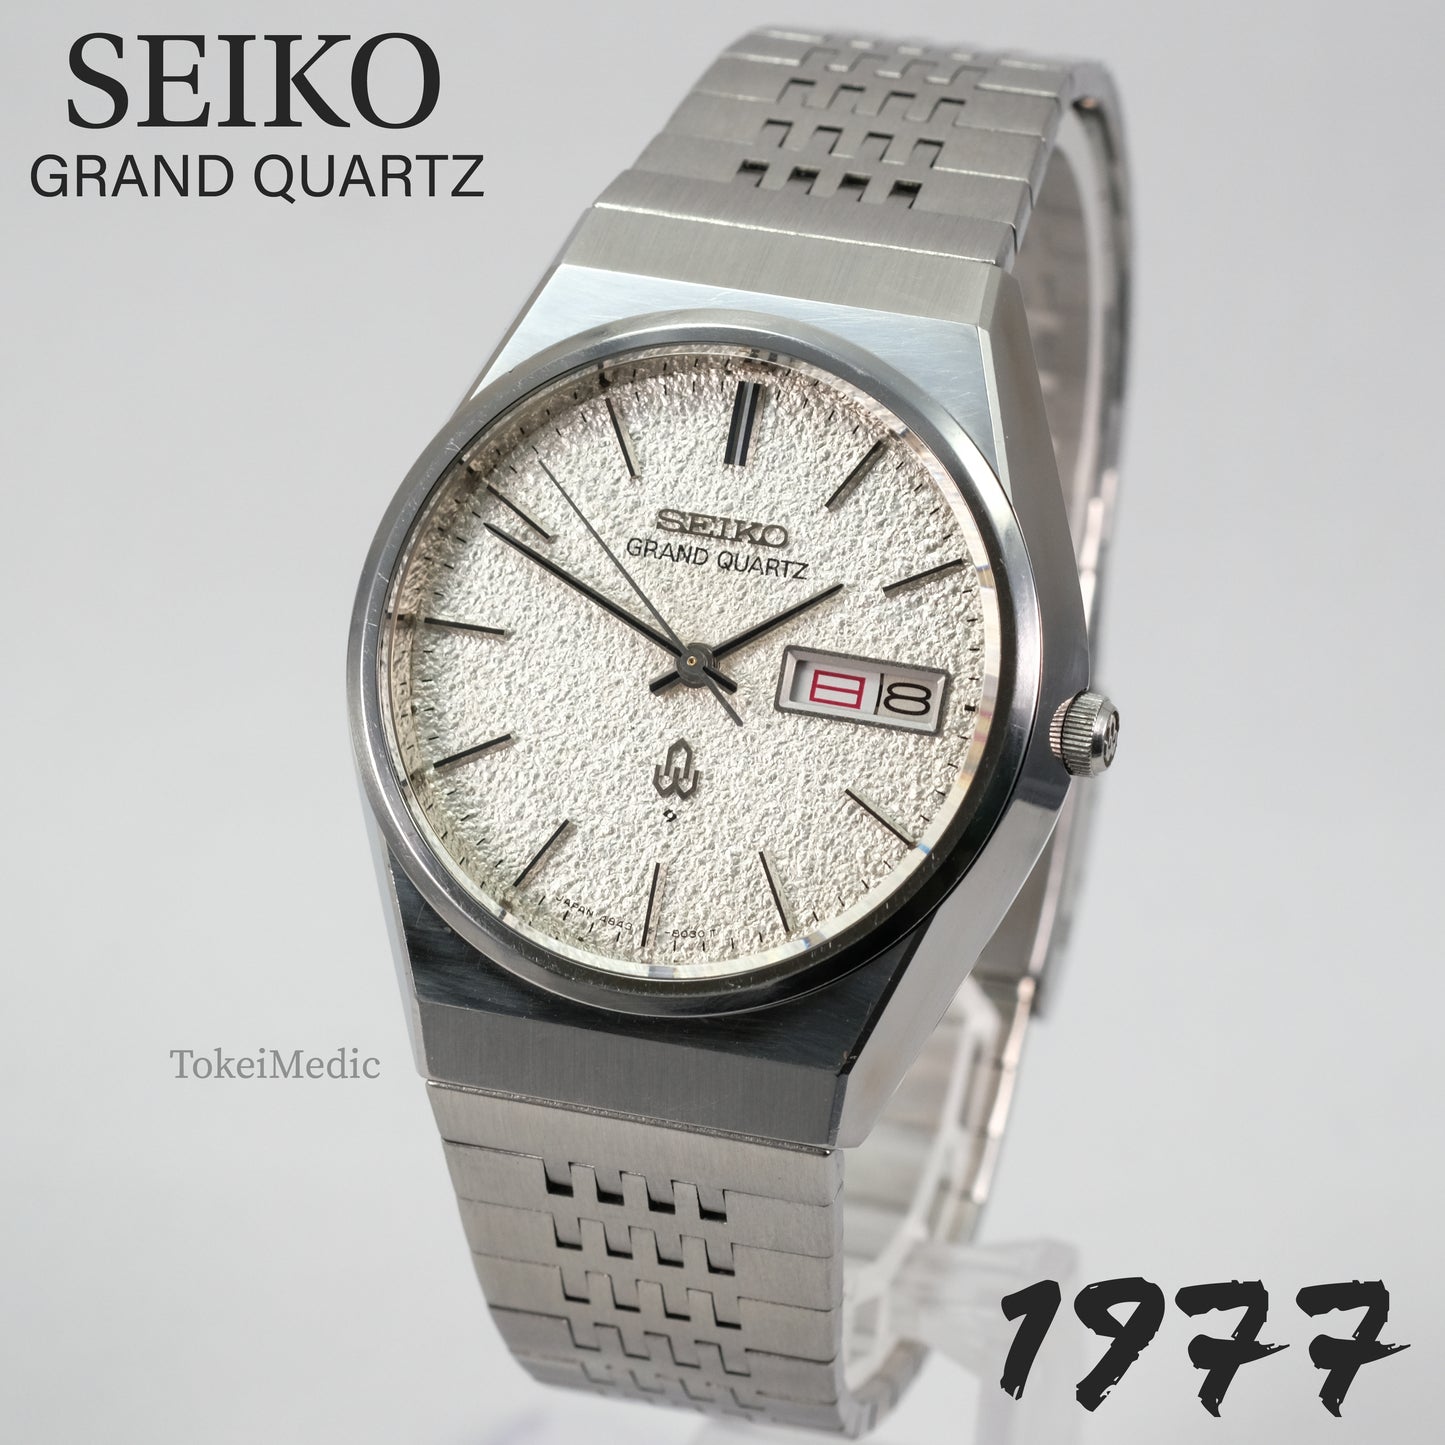 1977 Seiko Grand Quartz 4843-8100